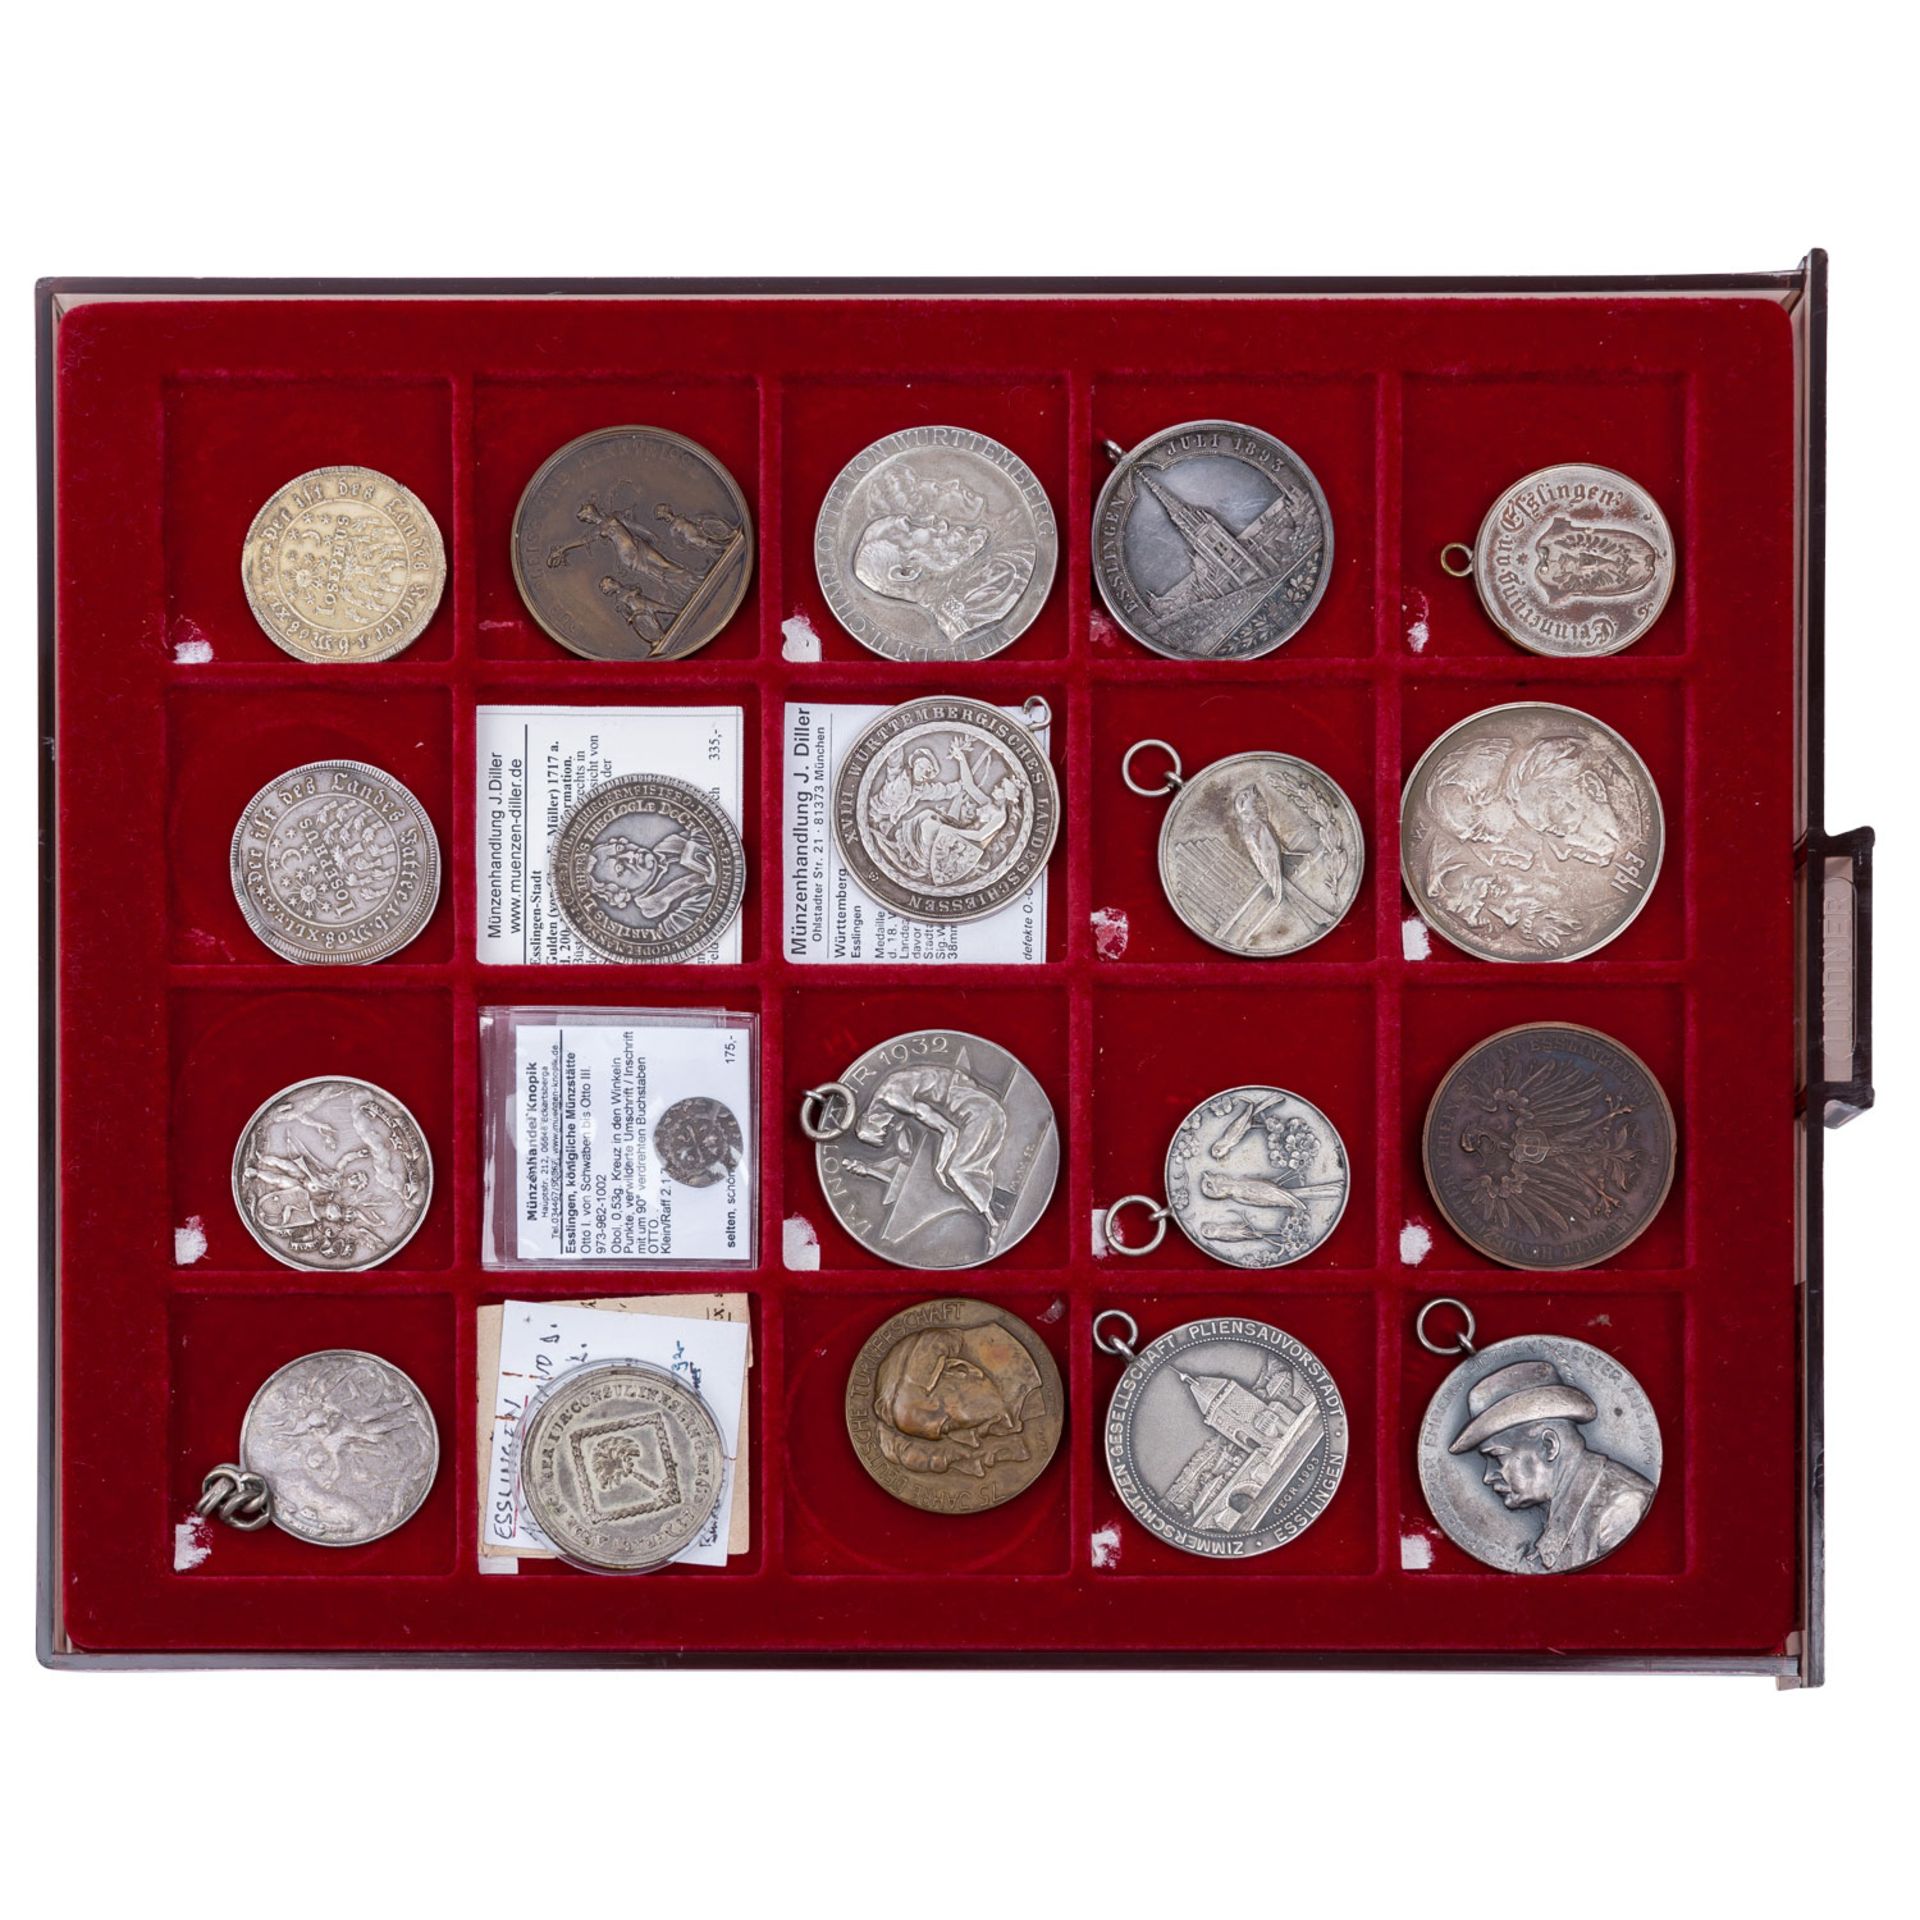 Esslingen - Spannende Großsammlung von Münzen, Medaillen, Plaketten und weiteres über die Stadtgesch - Bild 5 aus 7